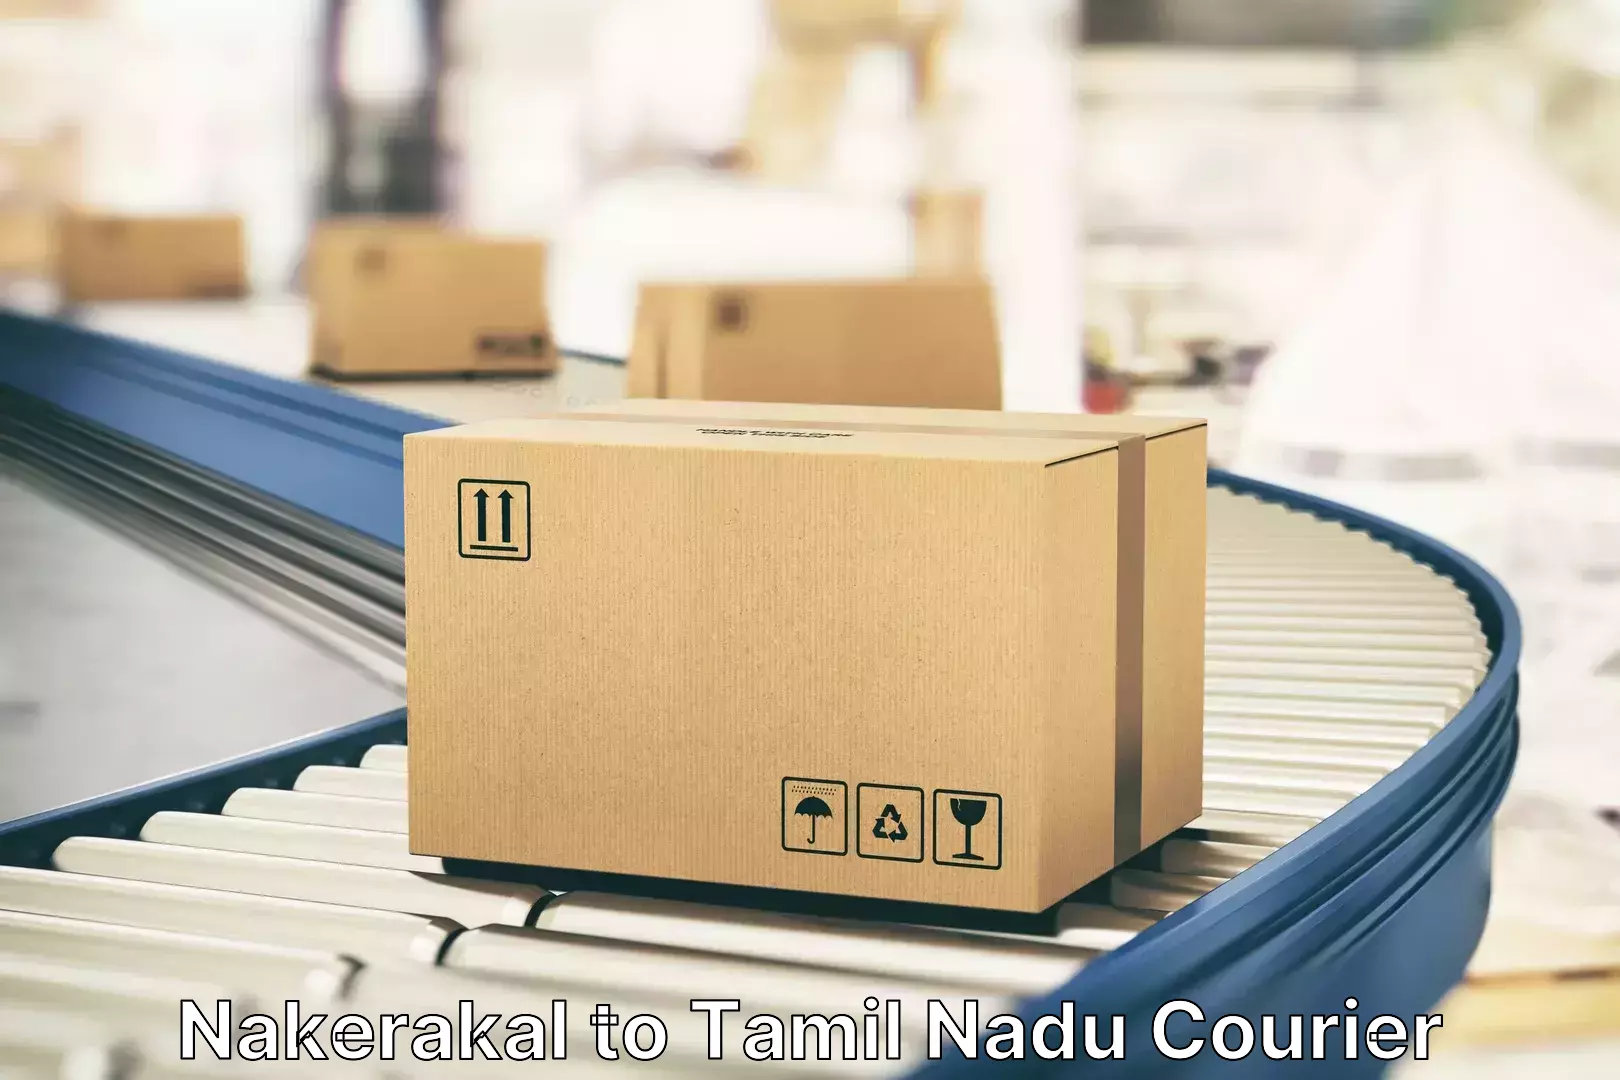 Luggage delivery network Nakerakal to Tiruturaipundi